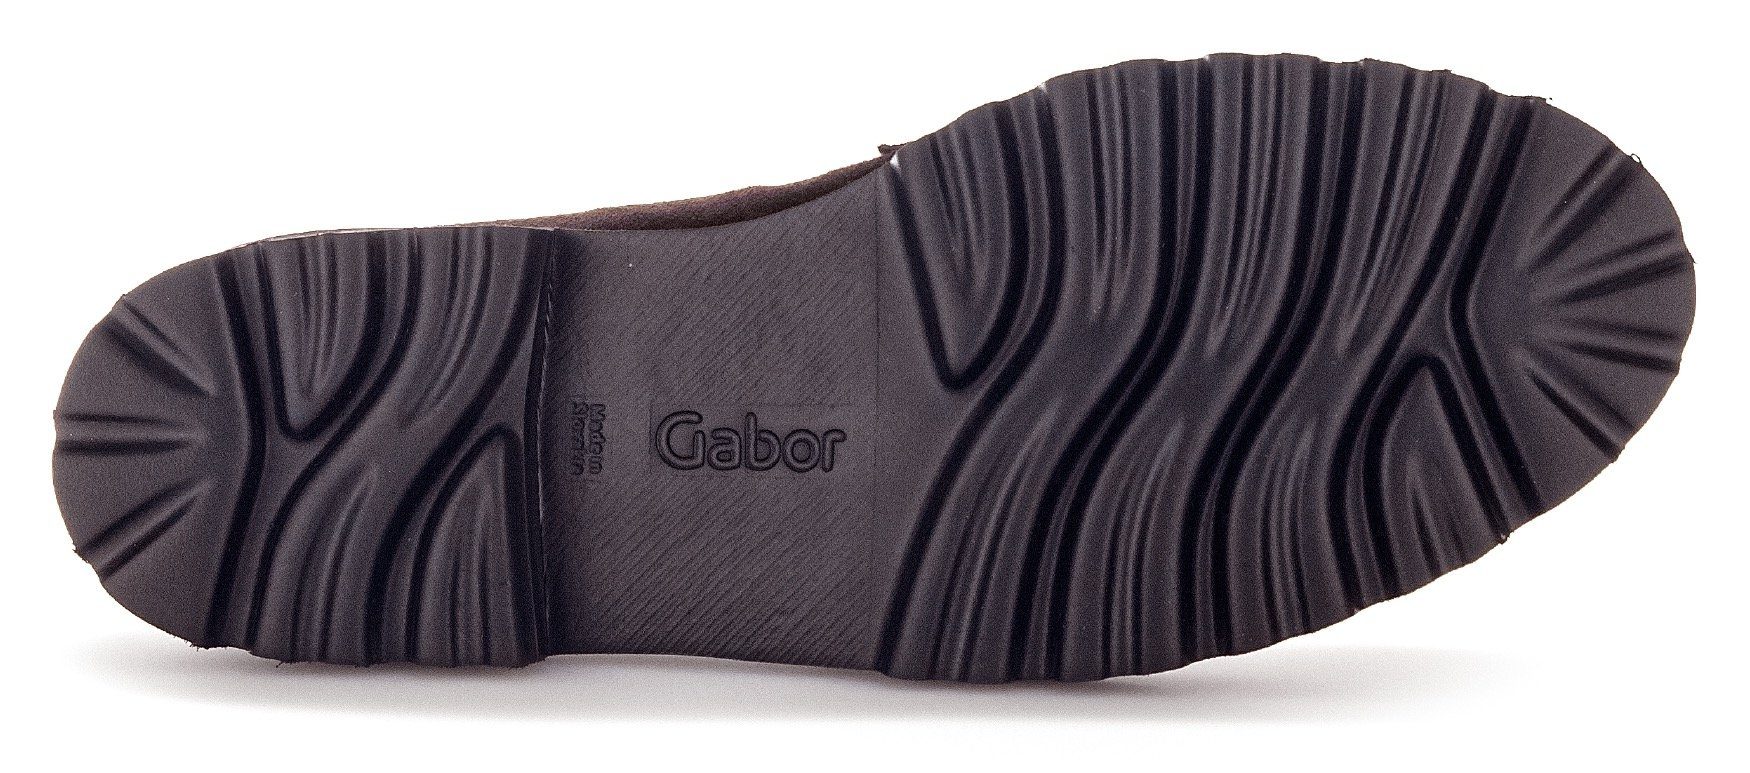 Slipper mit Fitting-Ausstattung Gabor Best dunkelbraun-schwarz